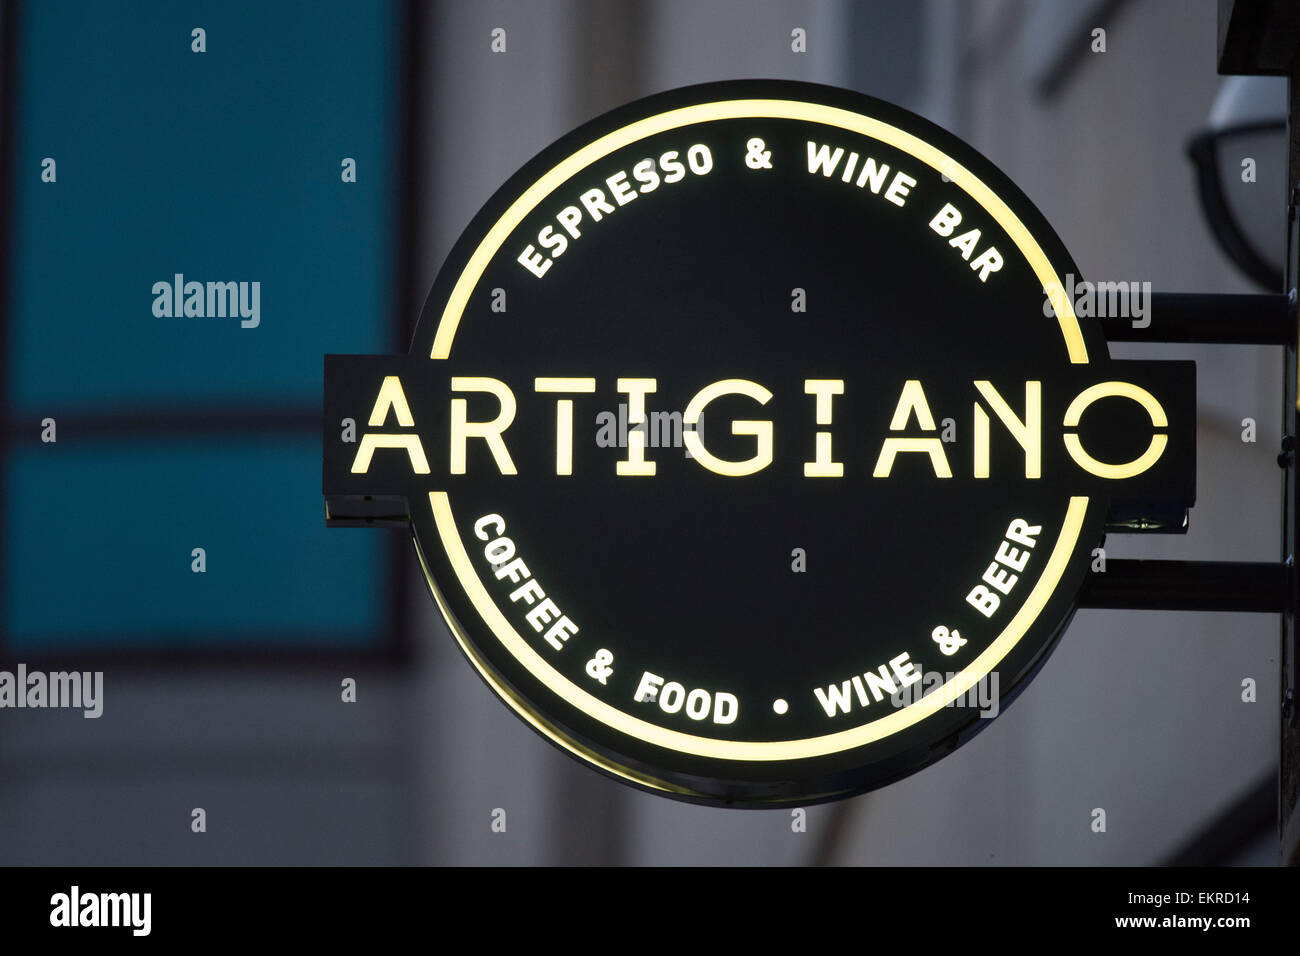 Artigiano espresso e wine bar. Foto Stock